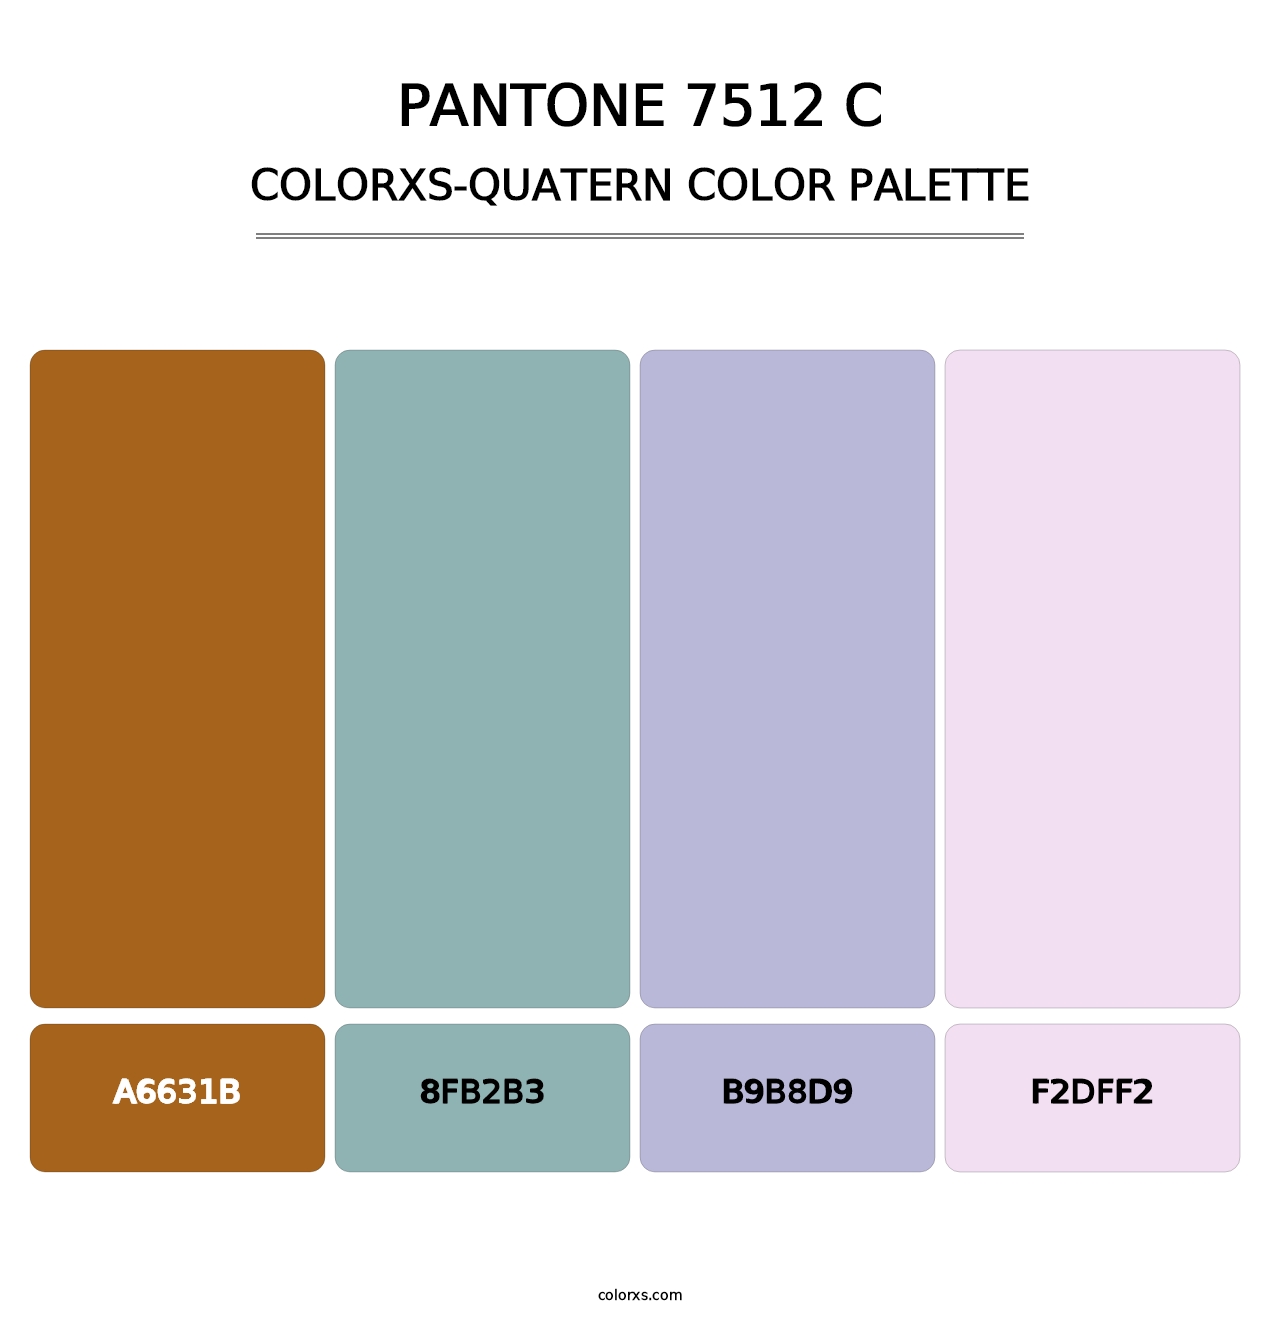 PANTONE 7512 C - Colorxs Quatern Palette